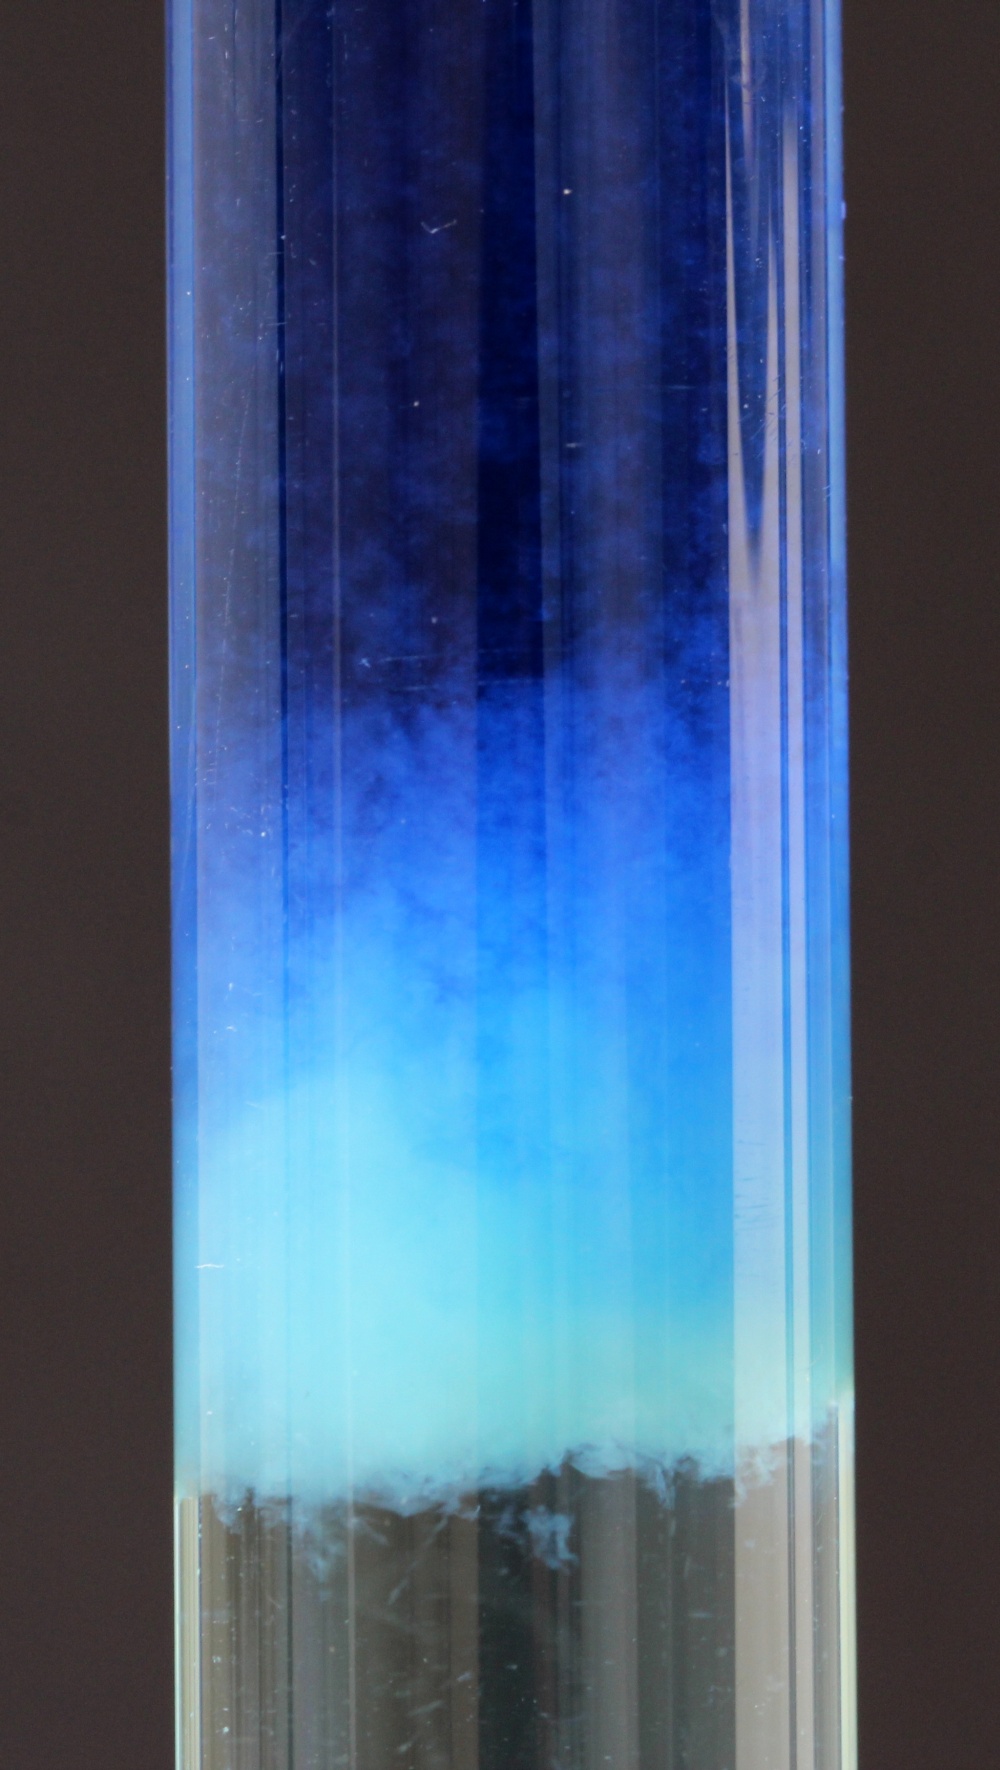 tubo de ensaio com aparência de flocos azulados